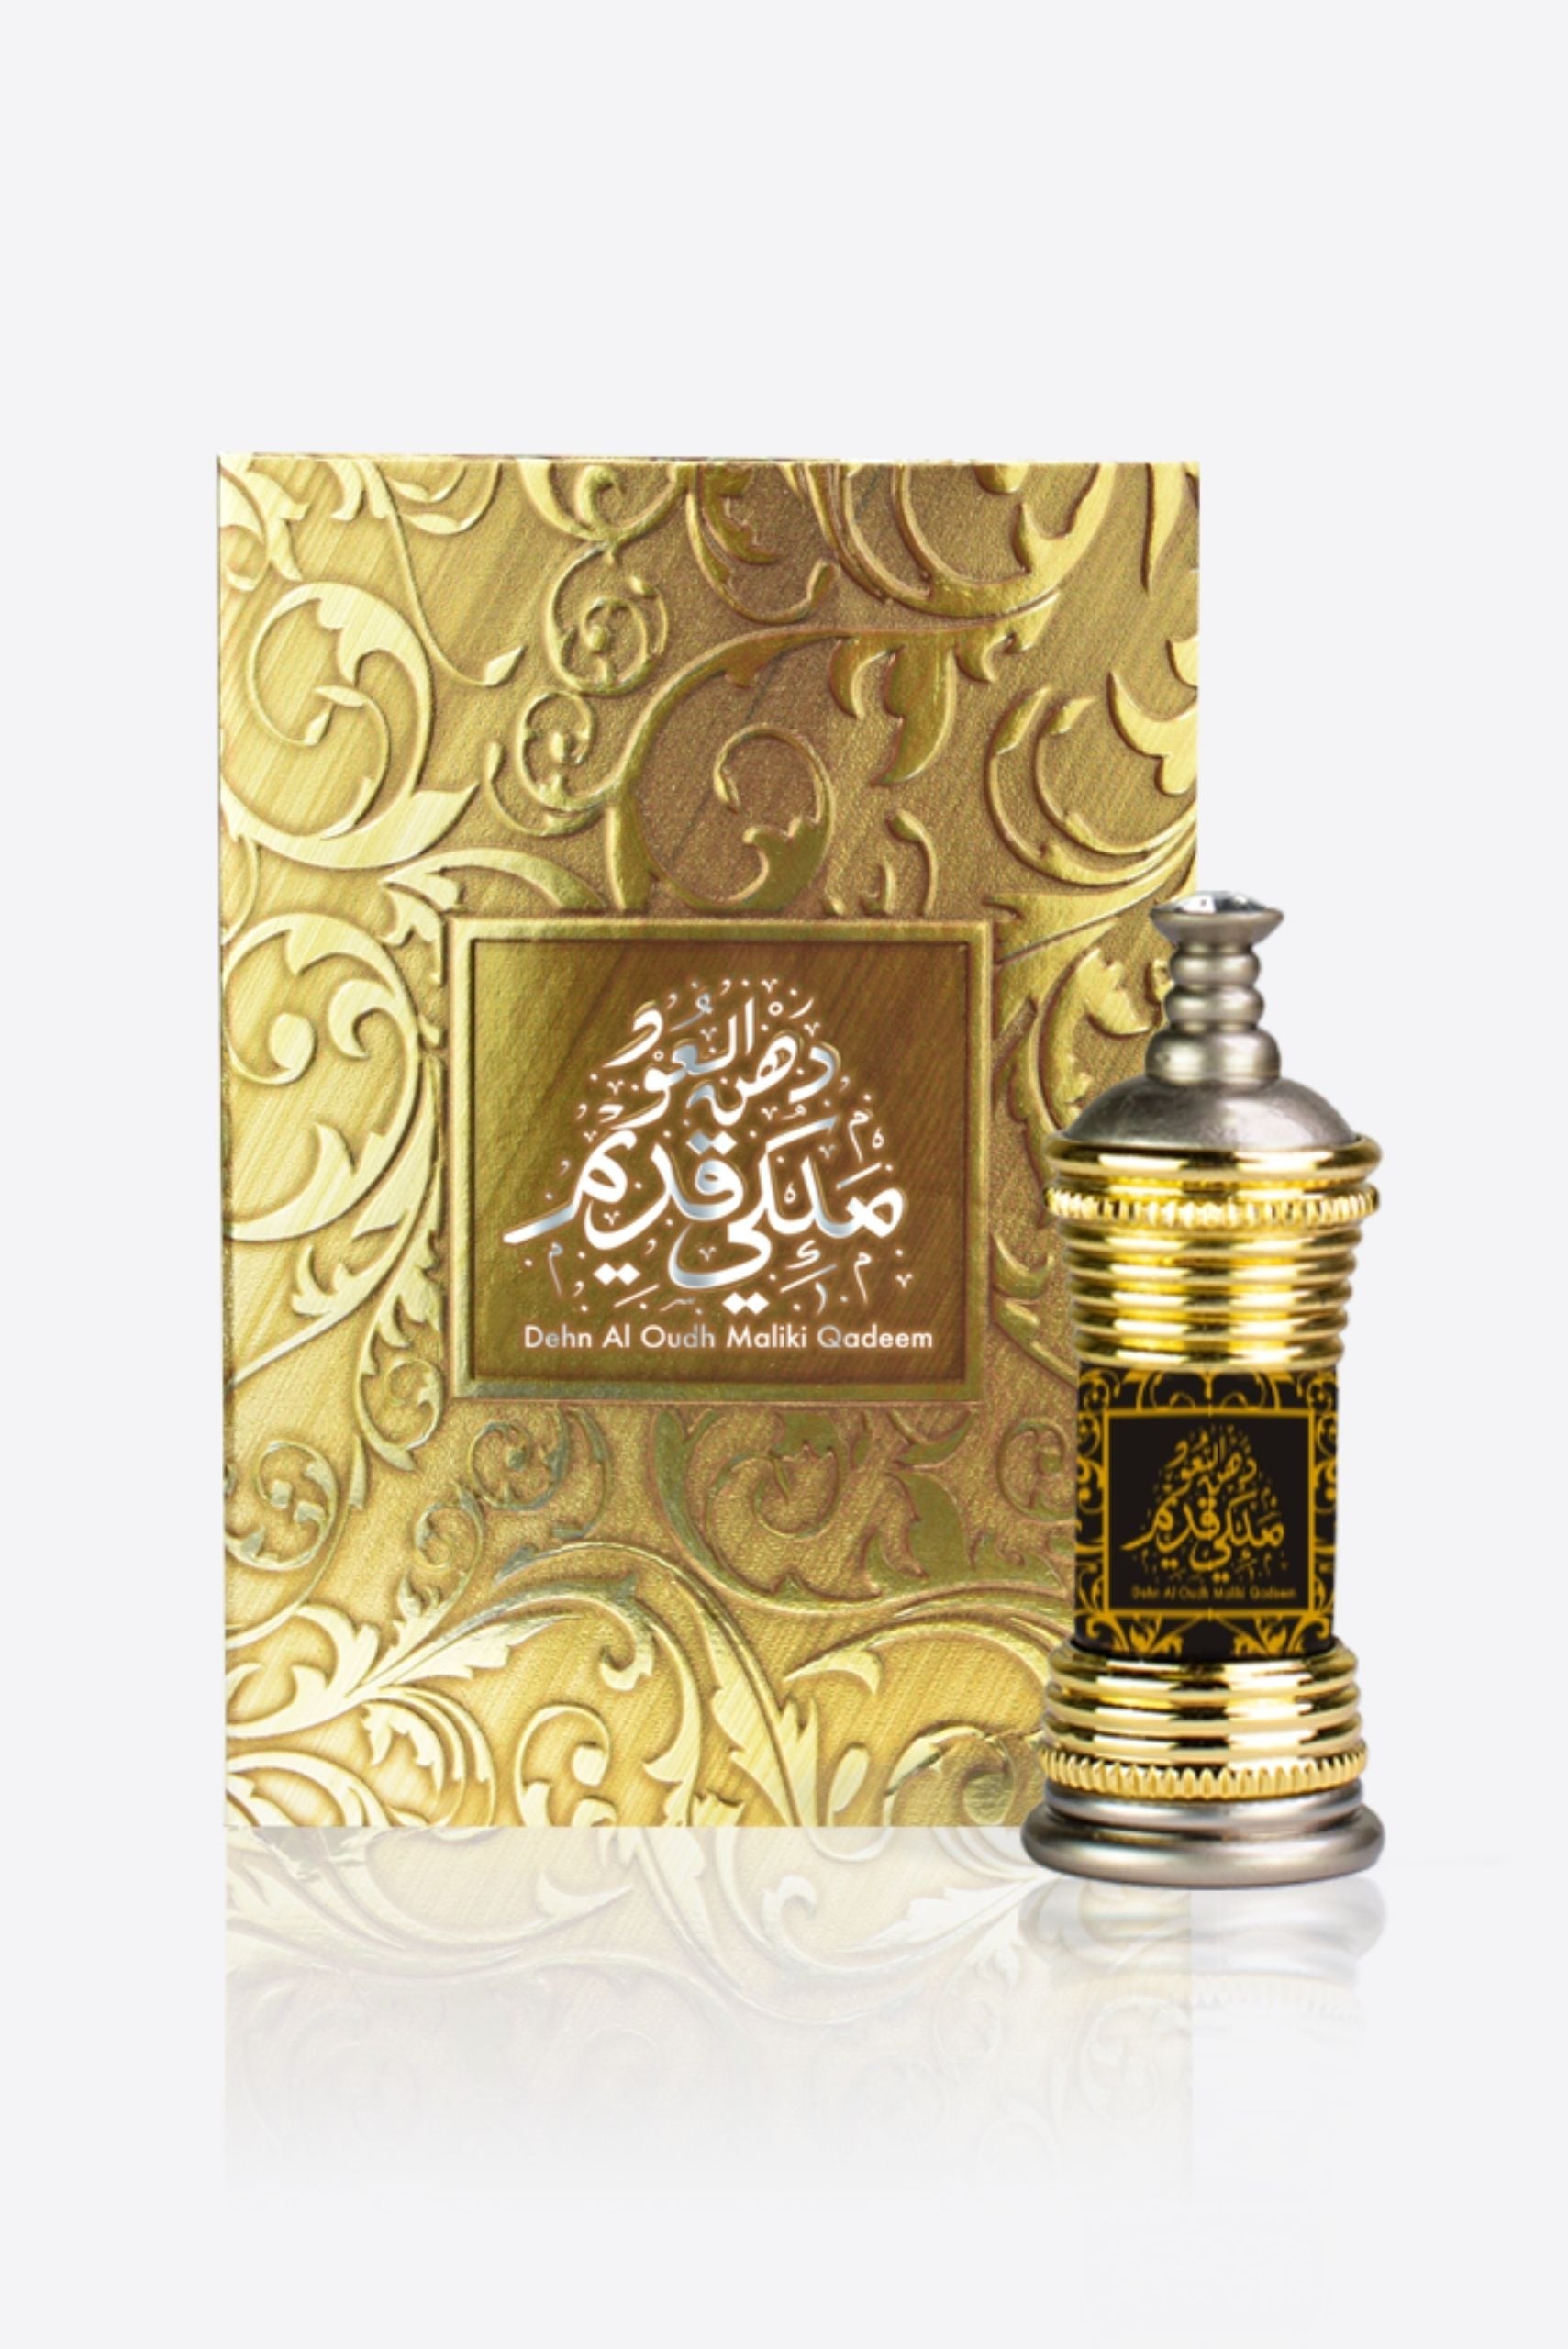 Dehn Al Oud Maliki Qadeem - Ahmed Al Maghribi - Muslim Lifestyle Store